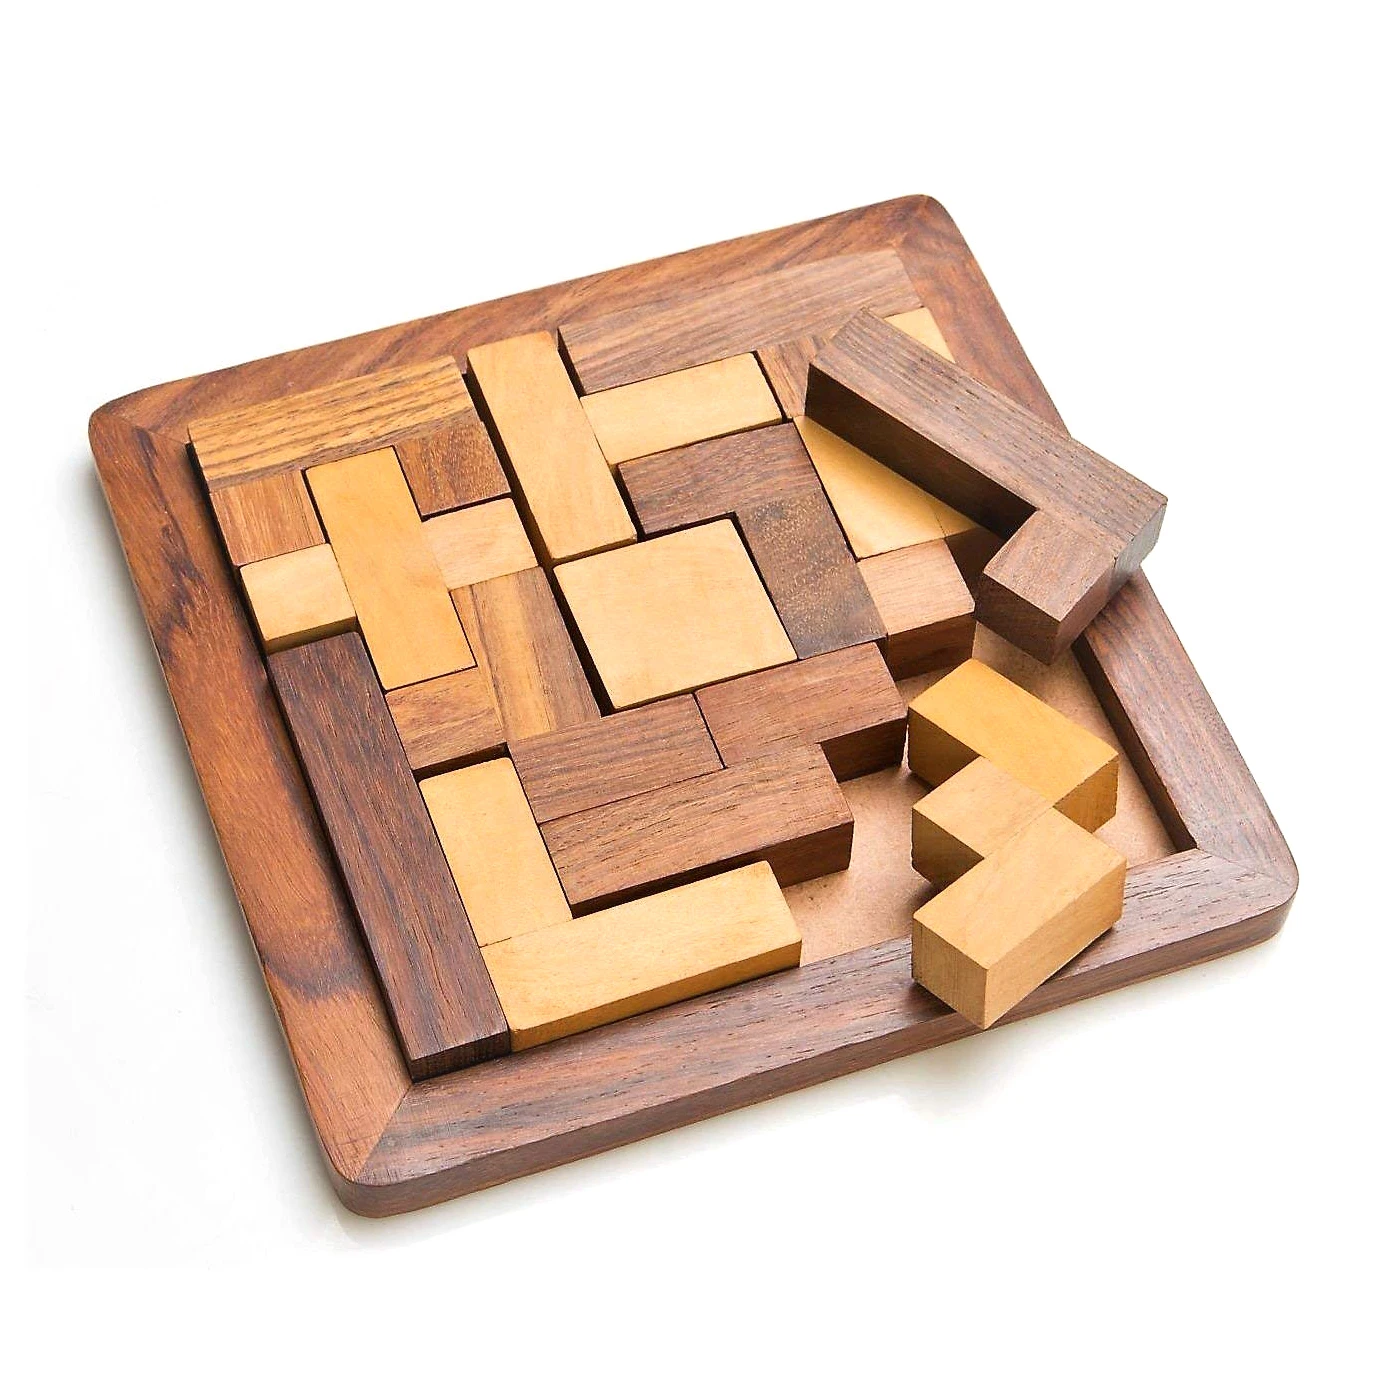 Source madera con forma cuadrada, juego para decoración hogar y regalo, el más vendido on m.alibaba.com